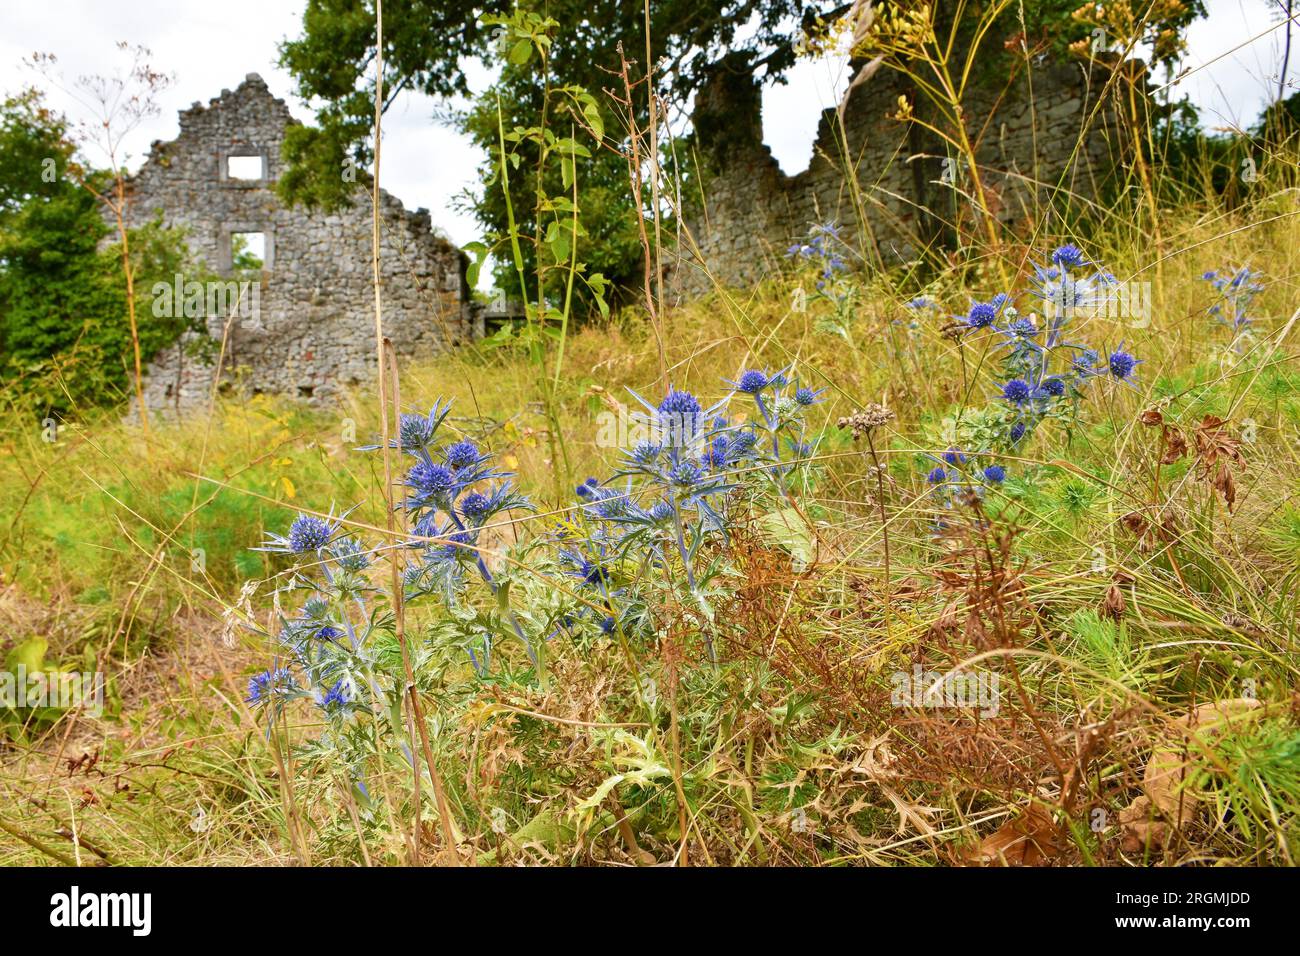 Blue amethyst eryngo (Eryngium amethystinum) flowers in selective focus with ruins of Skolj castle behind Stock Photo